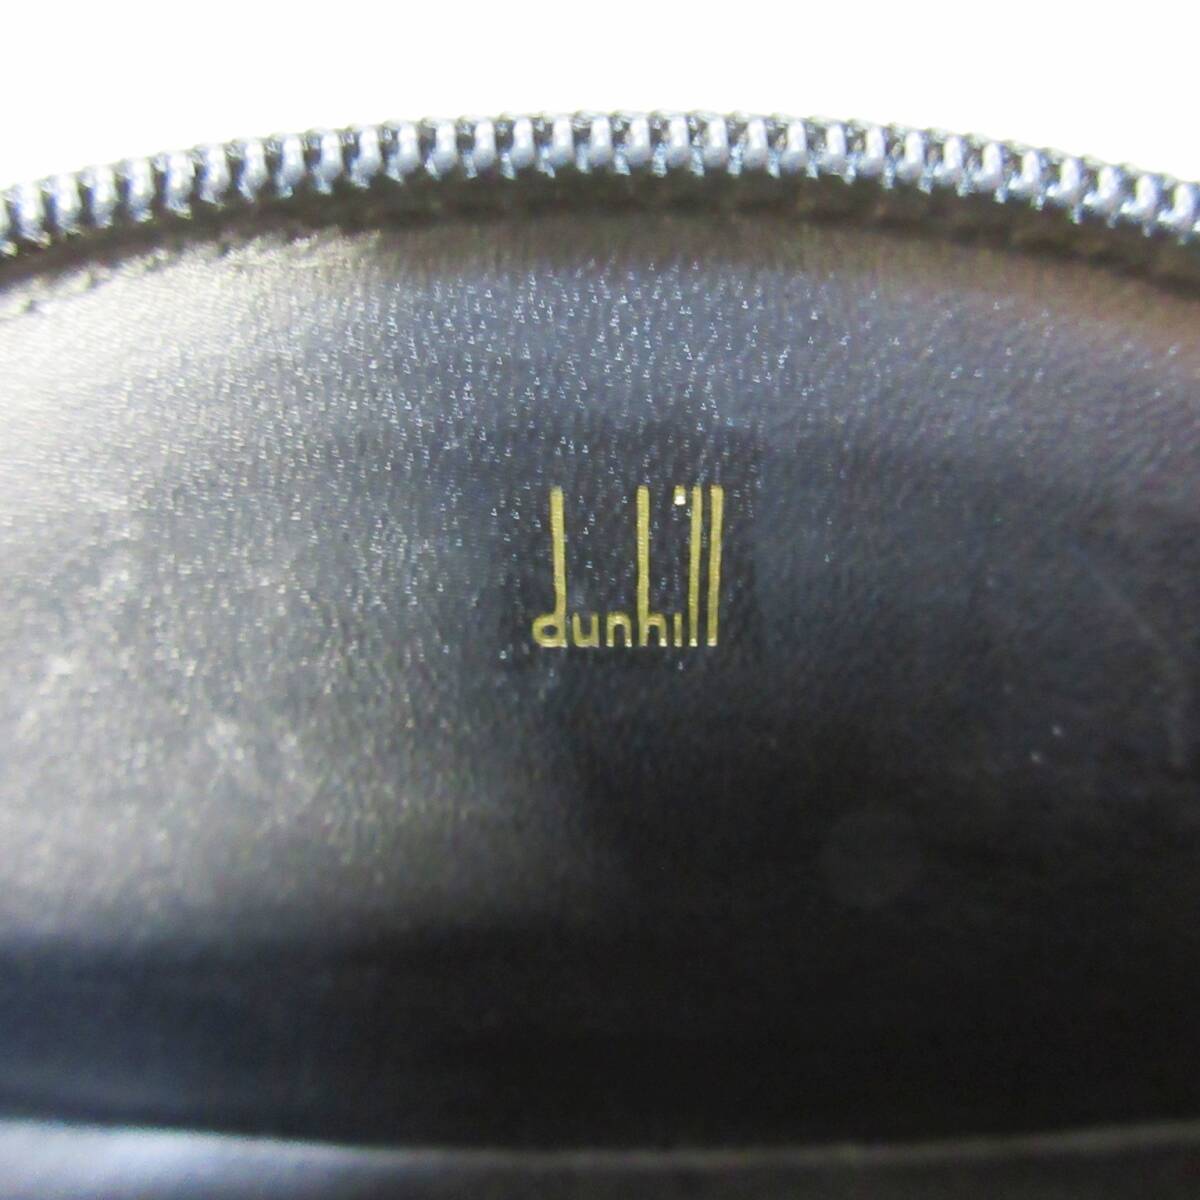 【超希少品】 dunhill ◆ ダンヒル ◆ 楕円型 ◆ ロゴ × 本革 レザー製 ◆ 小銭入れ コインケース ◆ 黒 ブラック系◆ 送料無料の画像3